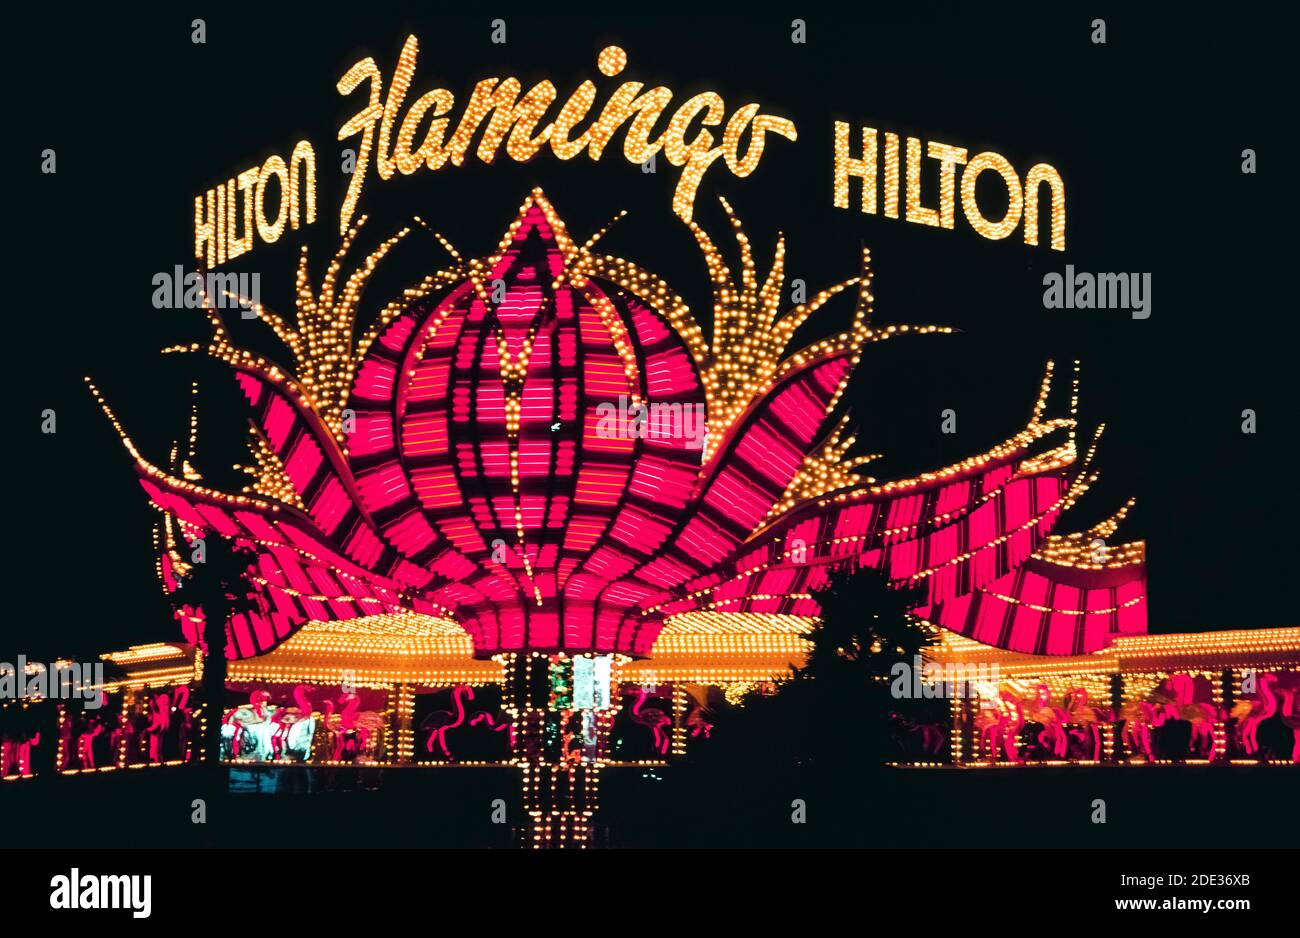 El neón y otras luces coloridas hicieron que este cartel al aire libre para el Flamingo Hotel & Casino destaque por la noche a lo largo de las Vegas Boulevard, más conocido como The Strip, una carretera bordeada de espectaculares hoteles y casinos al sur de los límites de la ciudad de las Vegas, Nevada, Estados Unidos. El Flamingo abrió sus puertas en 1946, una atracción muy temprana en ese famoso destino desértico conocido por sus juegos de azar y buenos tiempos. El Hilton Corp. Era dueño del hotel cuando se tomó esta fotografía histórica en 1983. Una década más tarde el hotel original fue demolido pero este signo único de plumas rosadas estilizadas fue salvado. Foto de stock